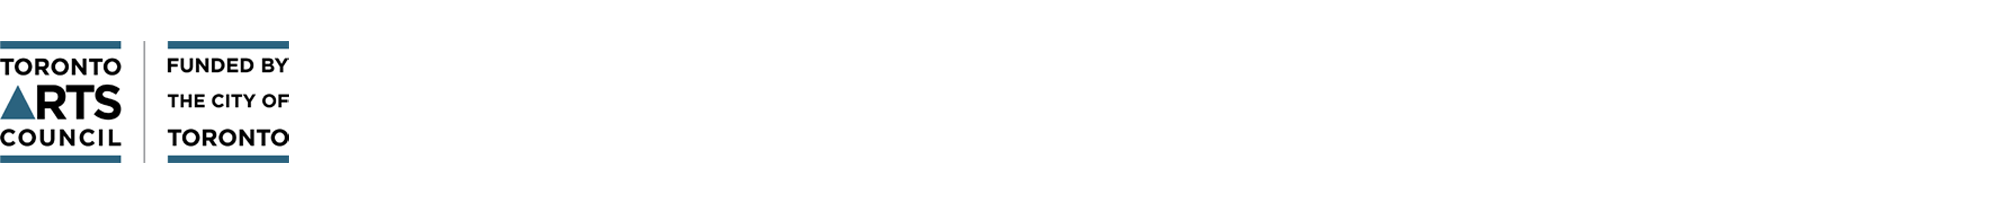 TAC logo